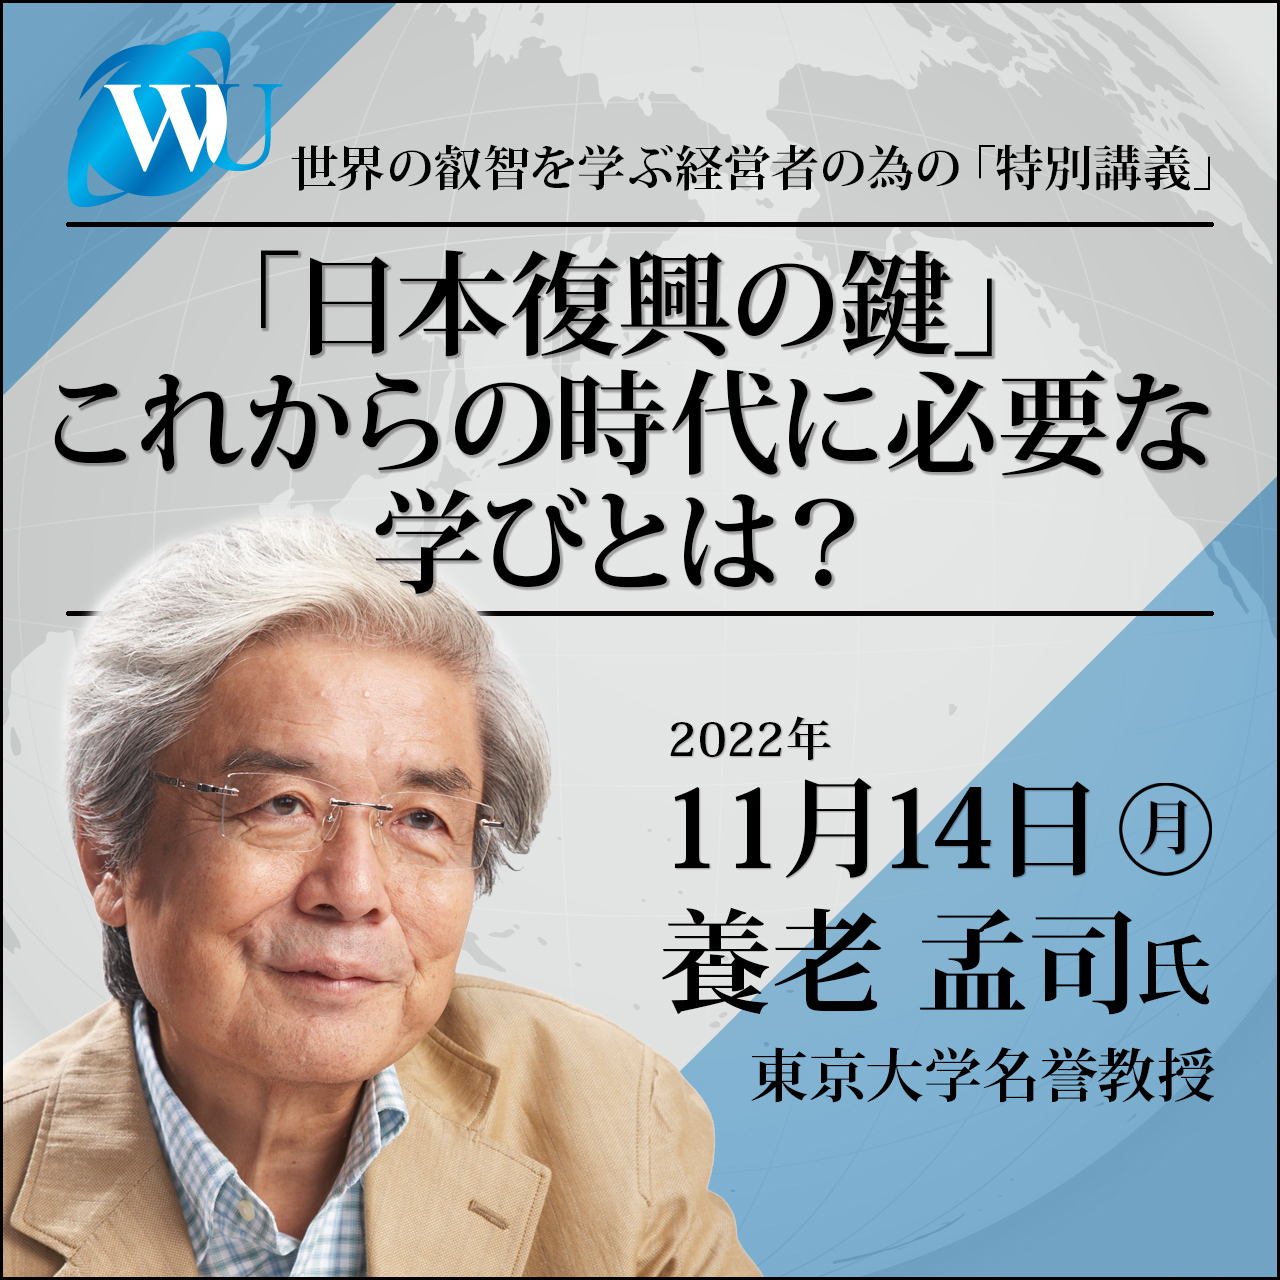 2022/11/14 特別講義 養老孟司氏
「『日本復興の鍵』これからの時代に必要な学びとは？」